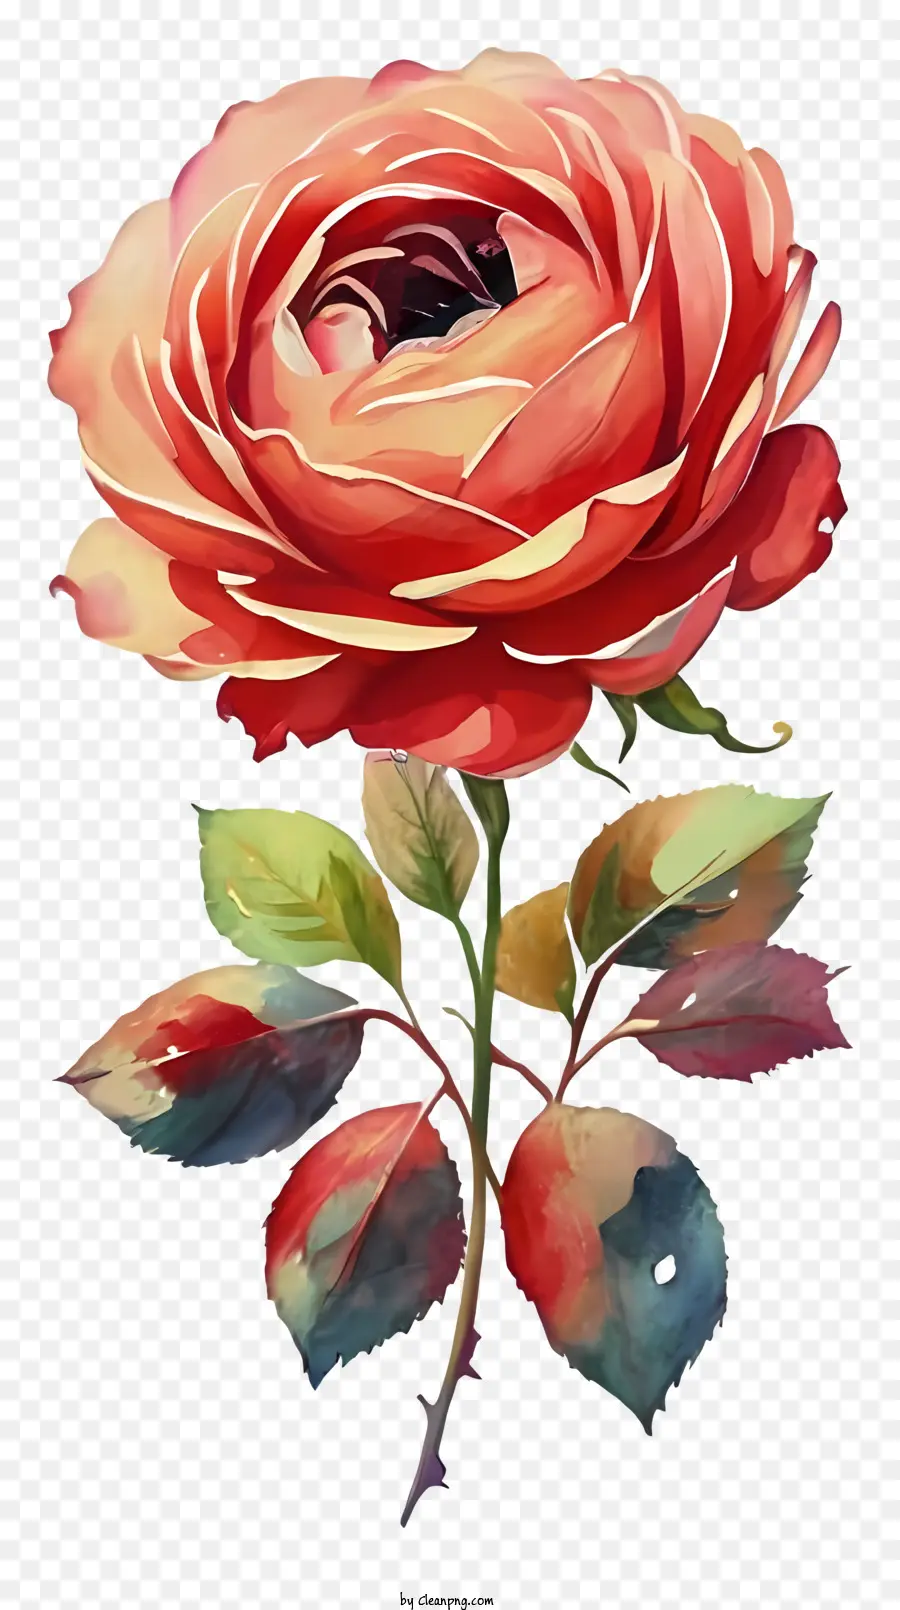 Rose - Aquarellmalerei einer detaillierten, lebendigen Rose